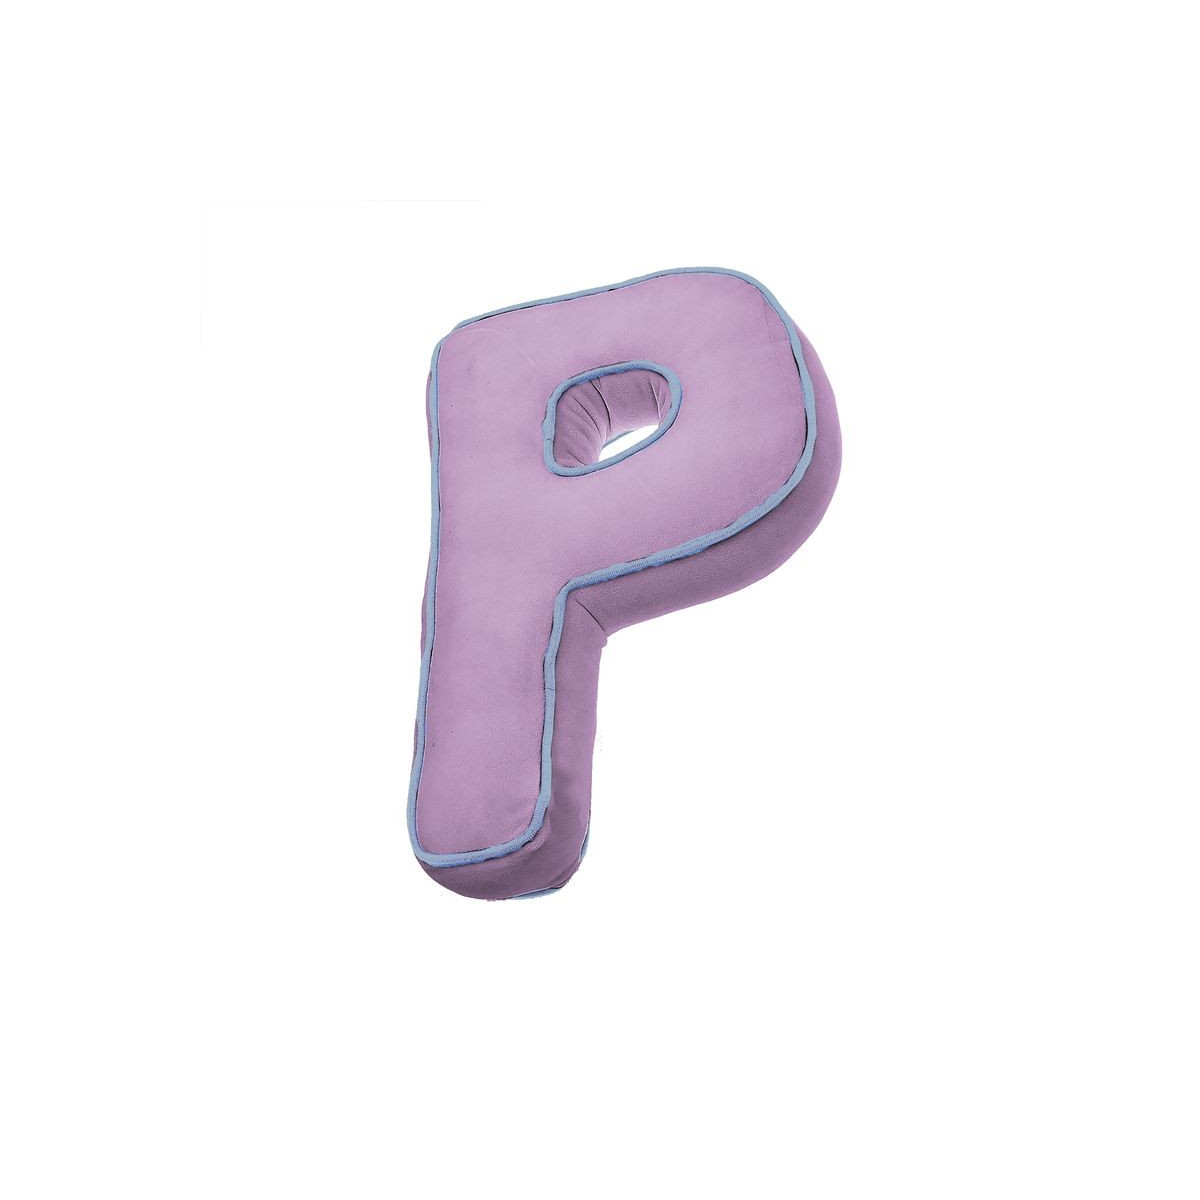 Cojin forma letra p rosa